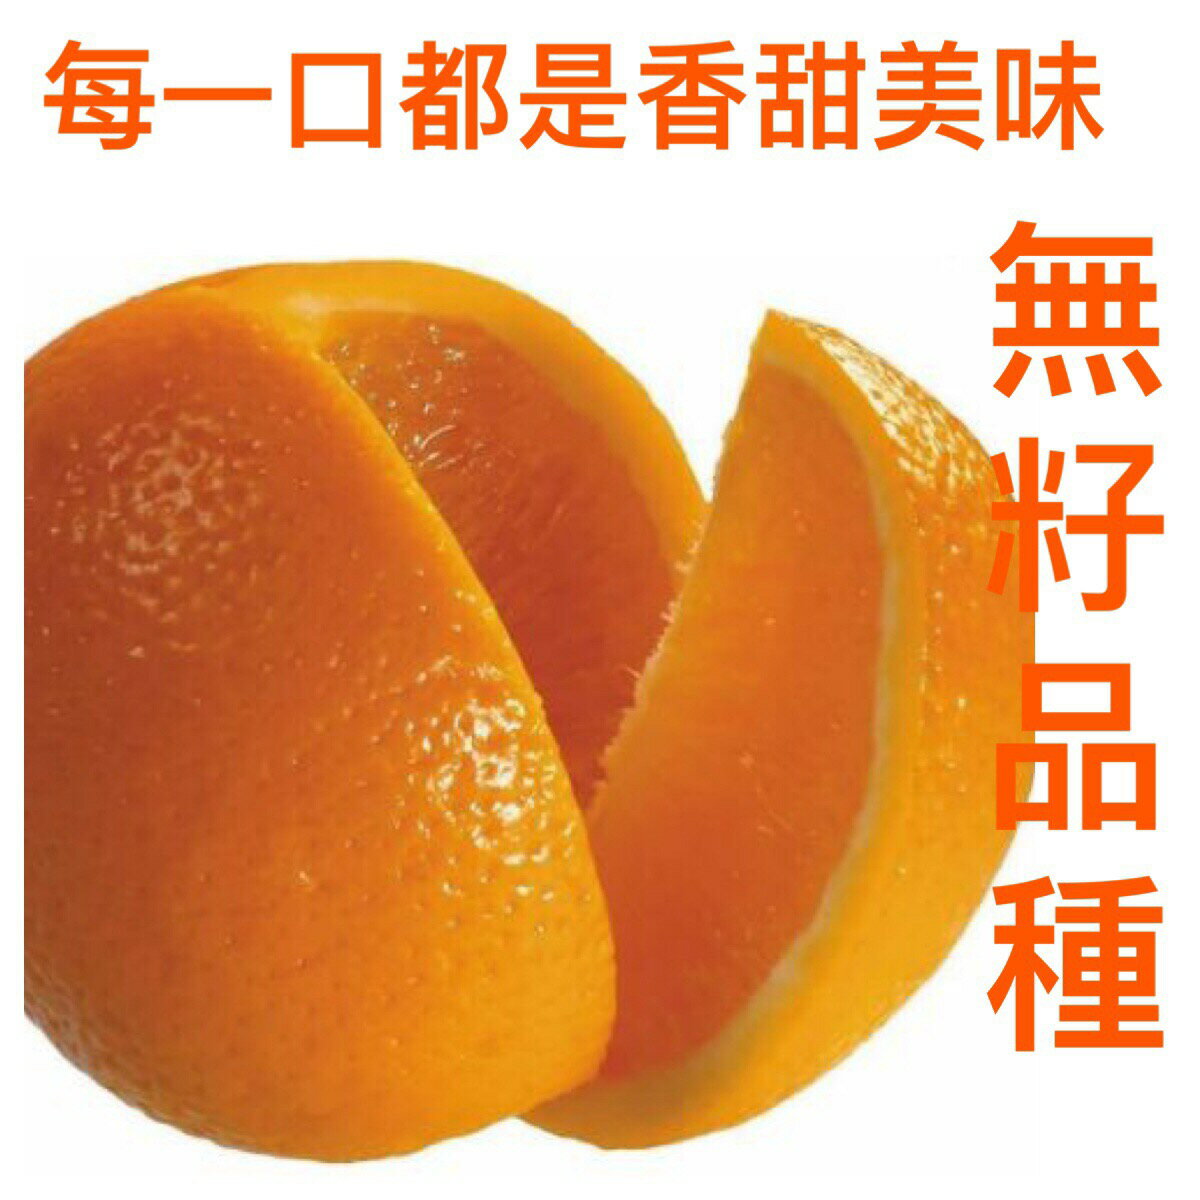 金太陽無籽甜橙18入/36入/60入/72入/108入【皇家果物】